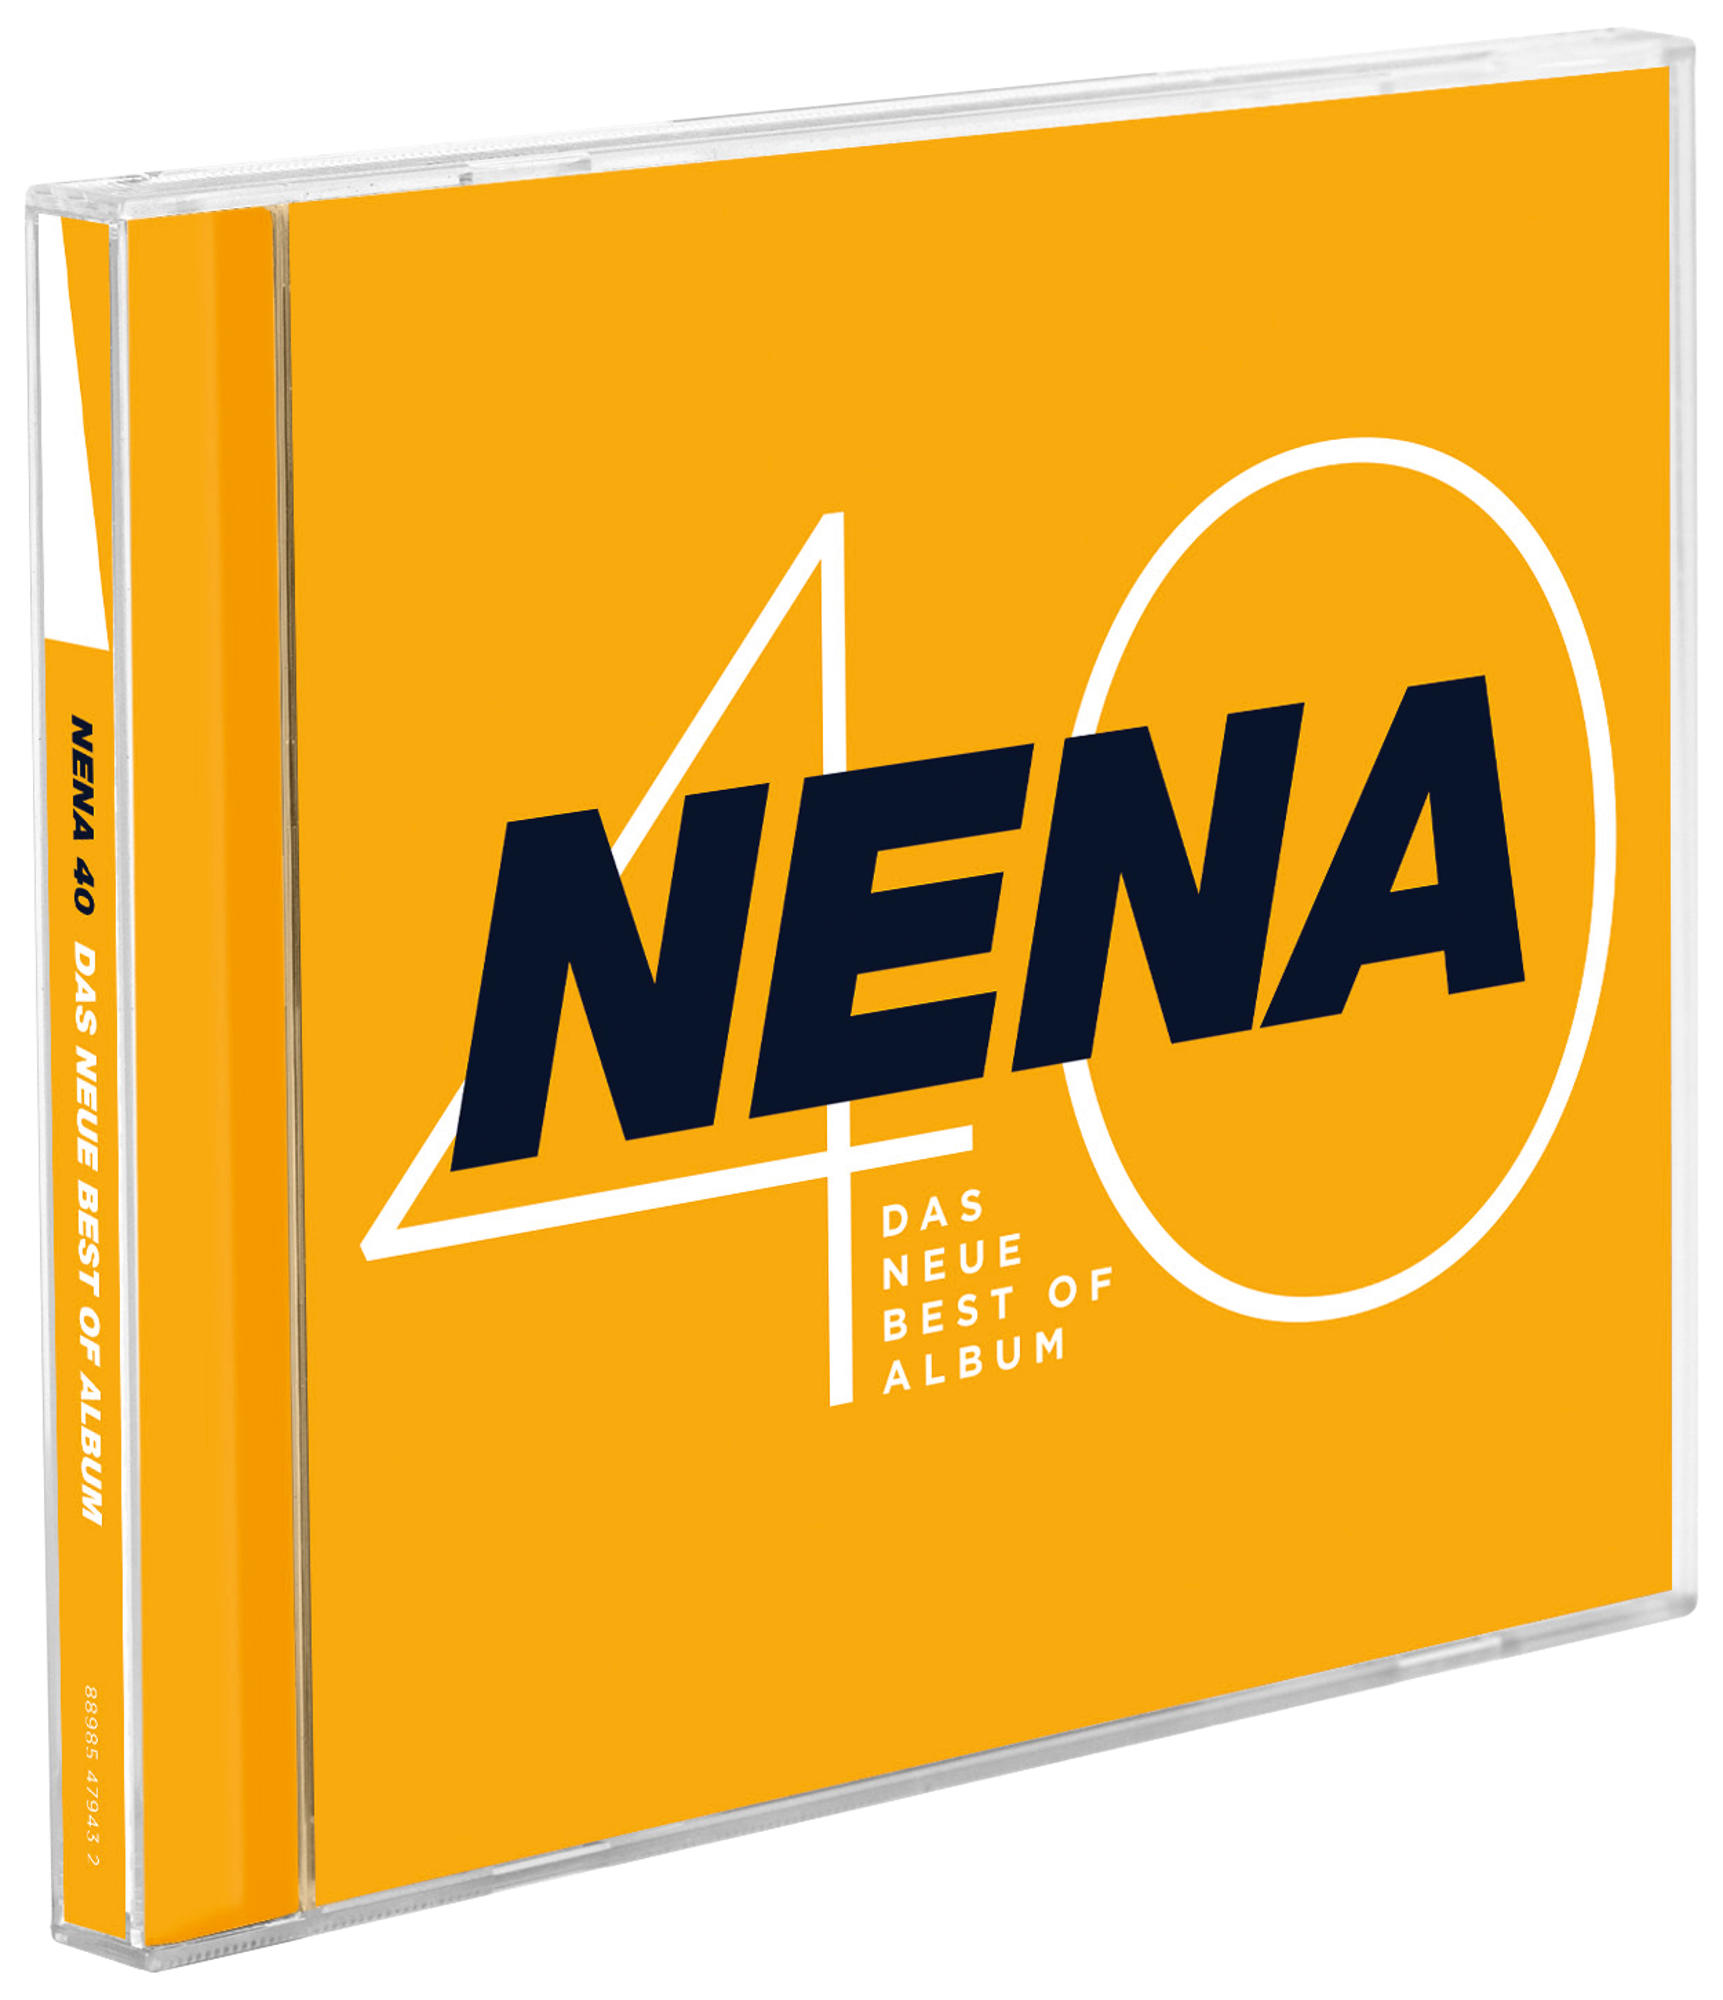 Nena - 40 (CD) Neue Of - Album Best - Das